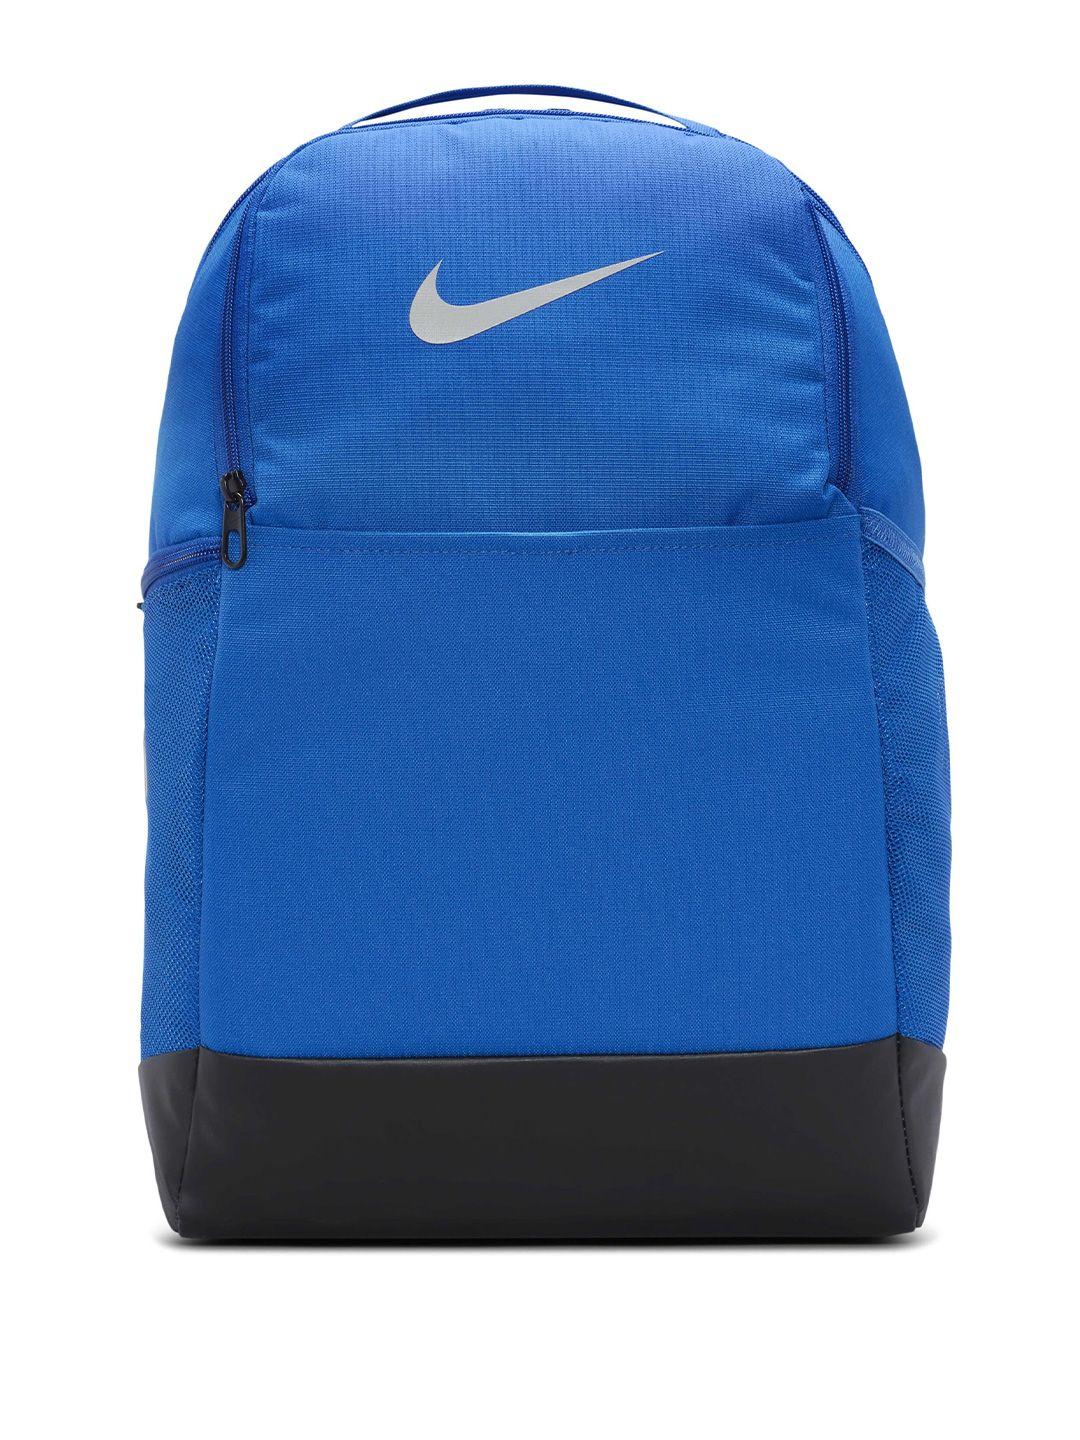 nike brasilia logo printed backpack